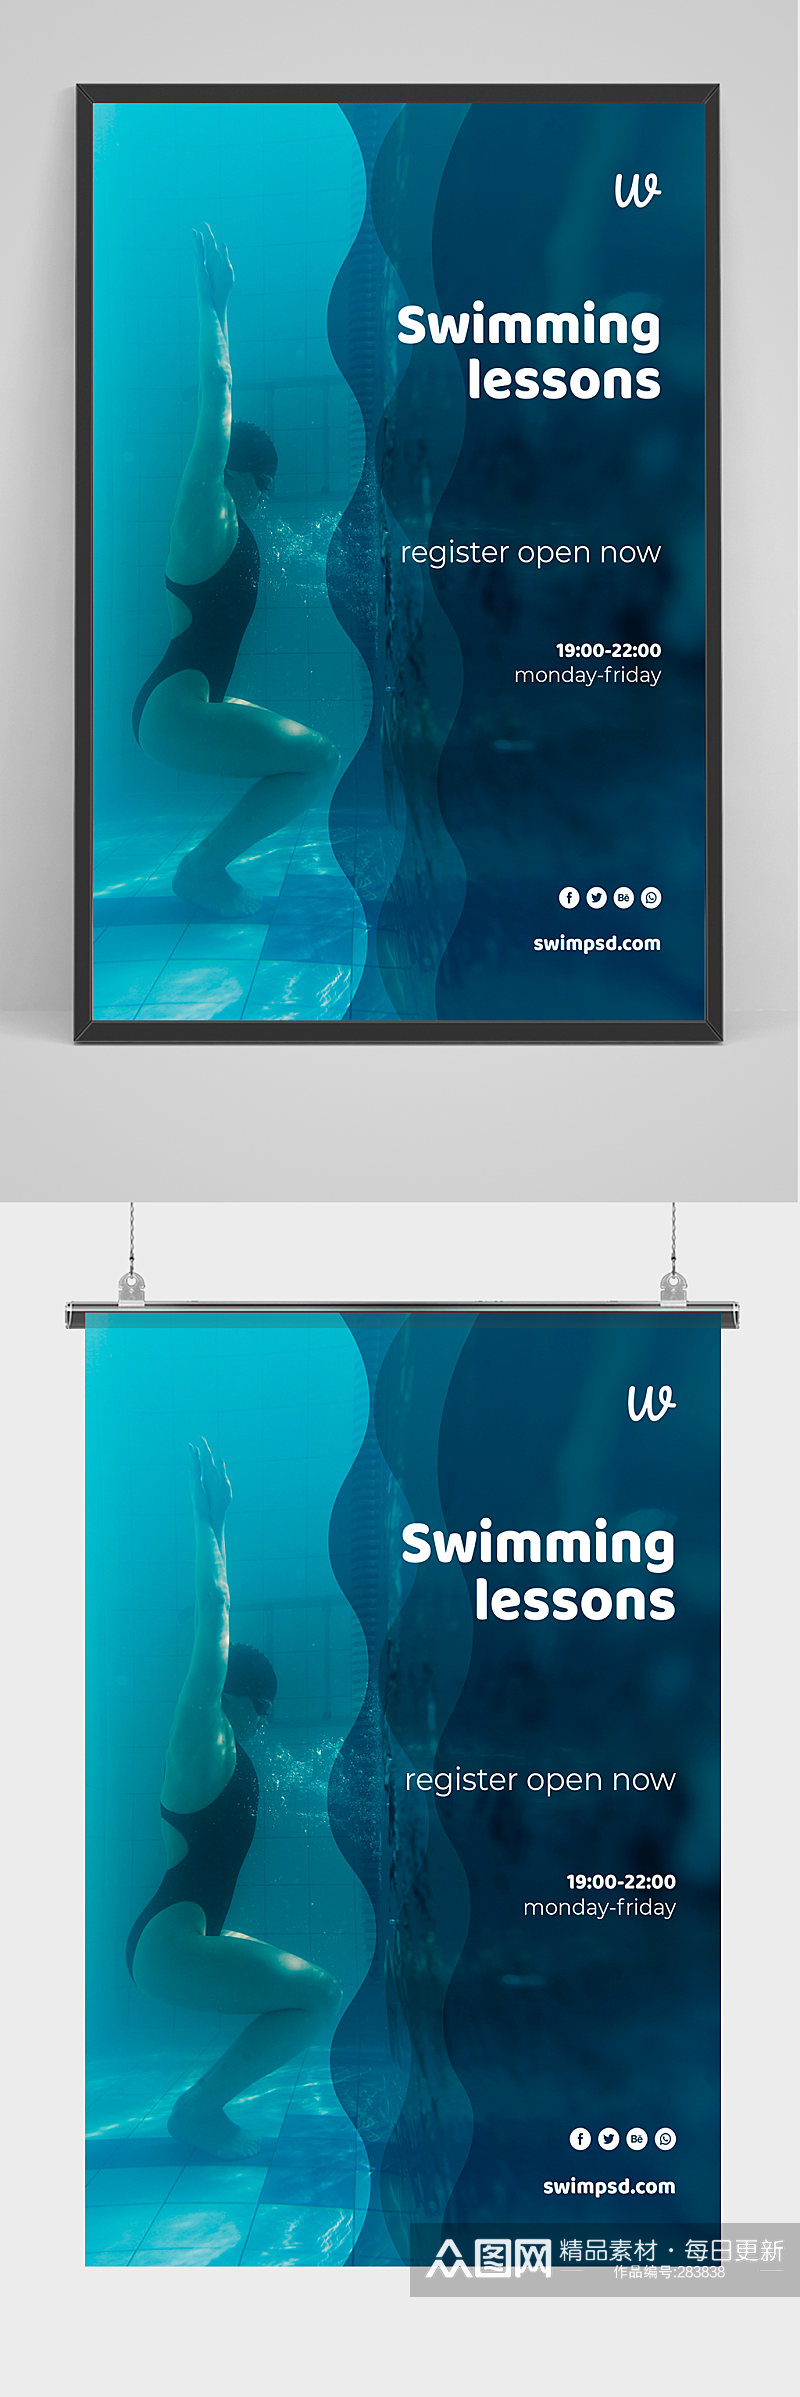 蓝色波浪游泳海报设计素材